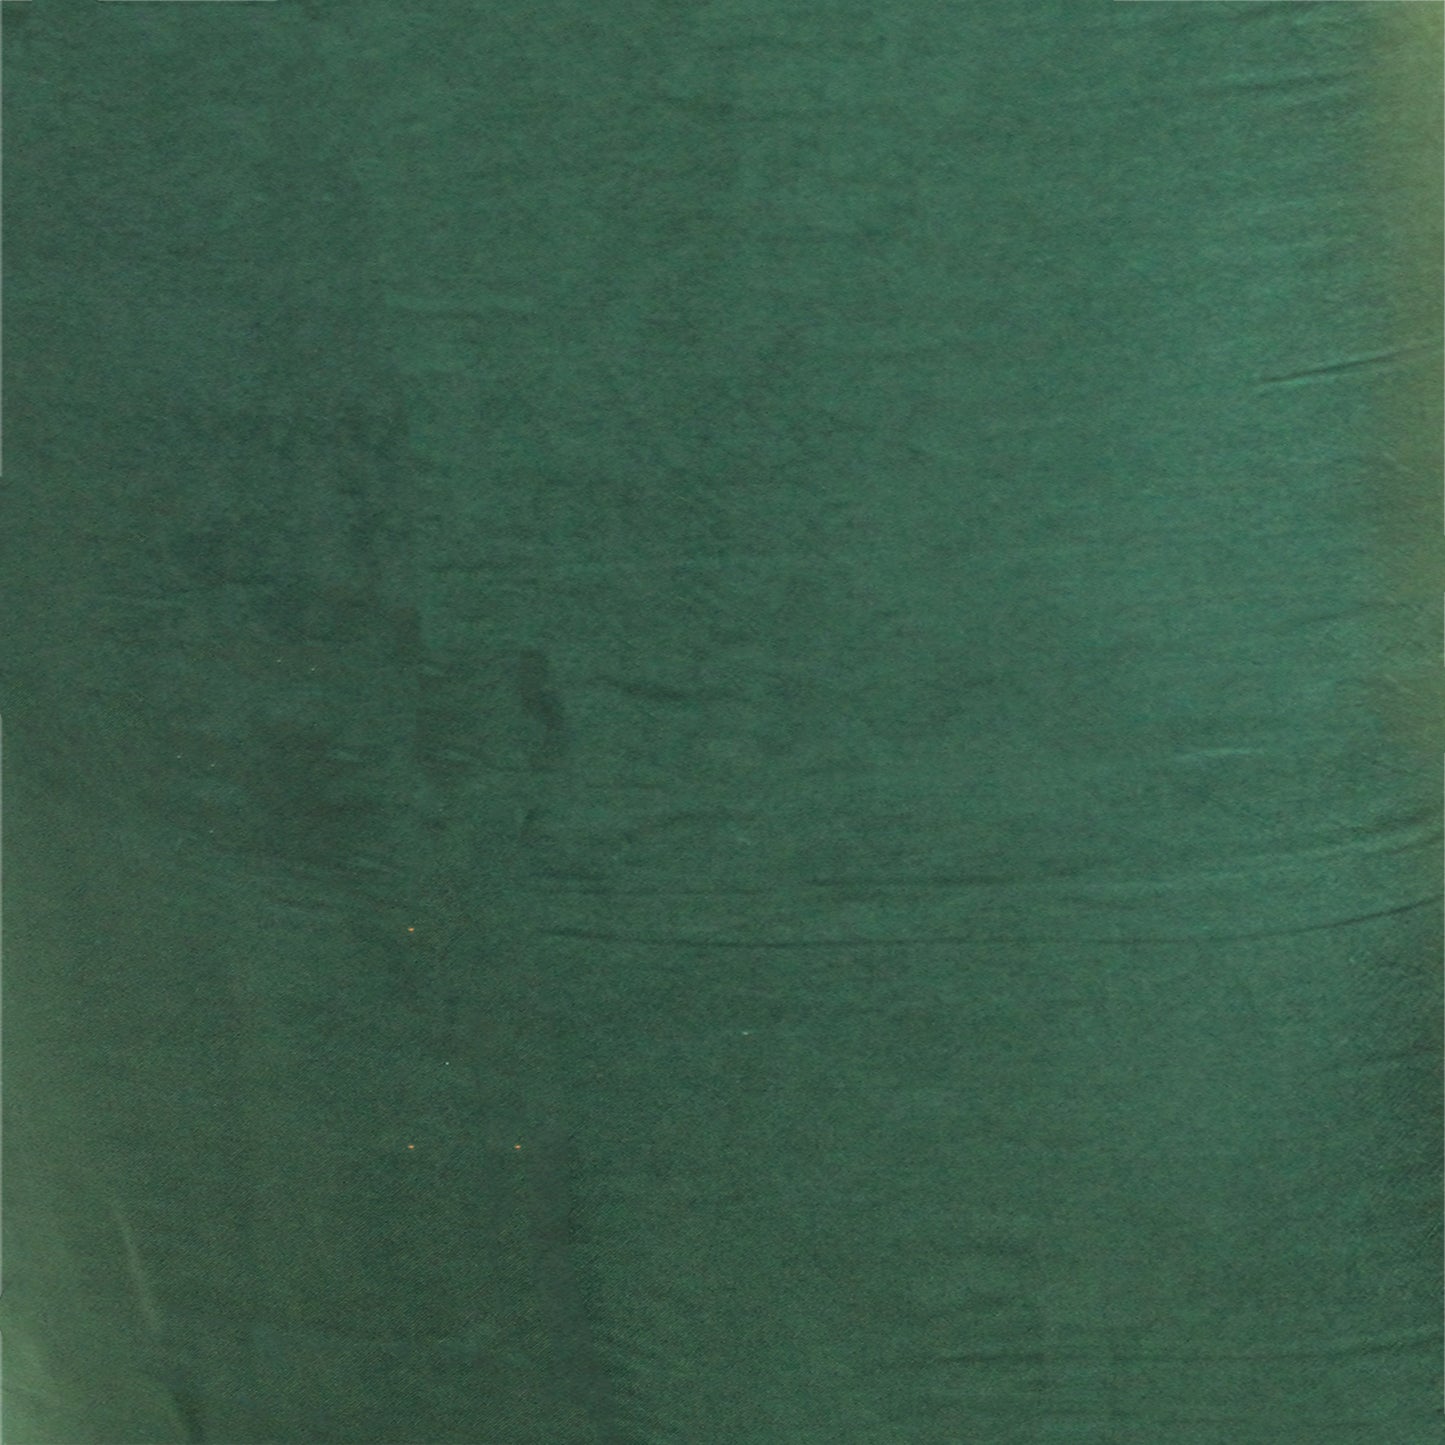 Bottle Green Silk Dress Material